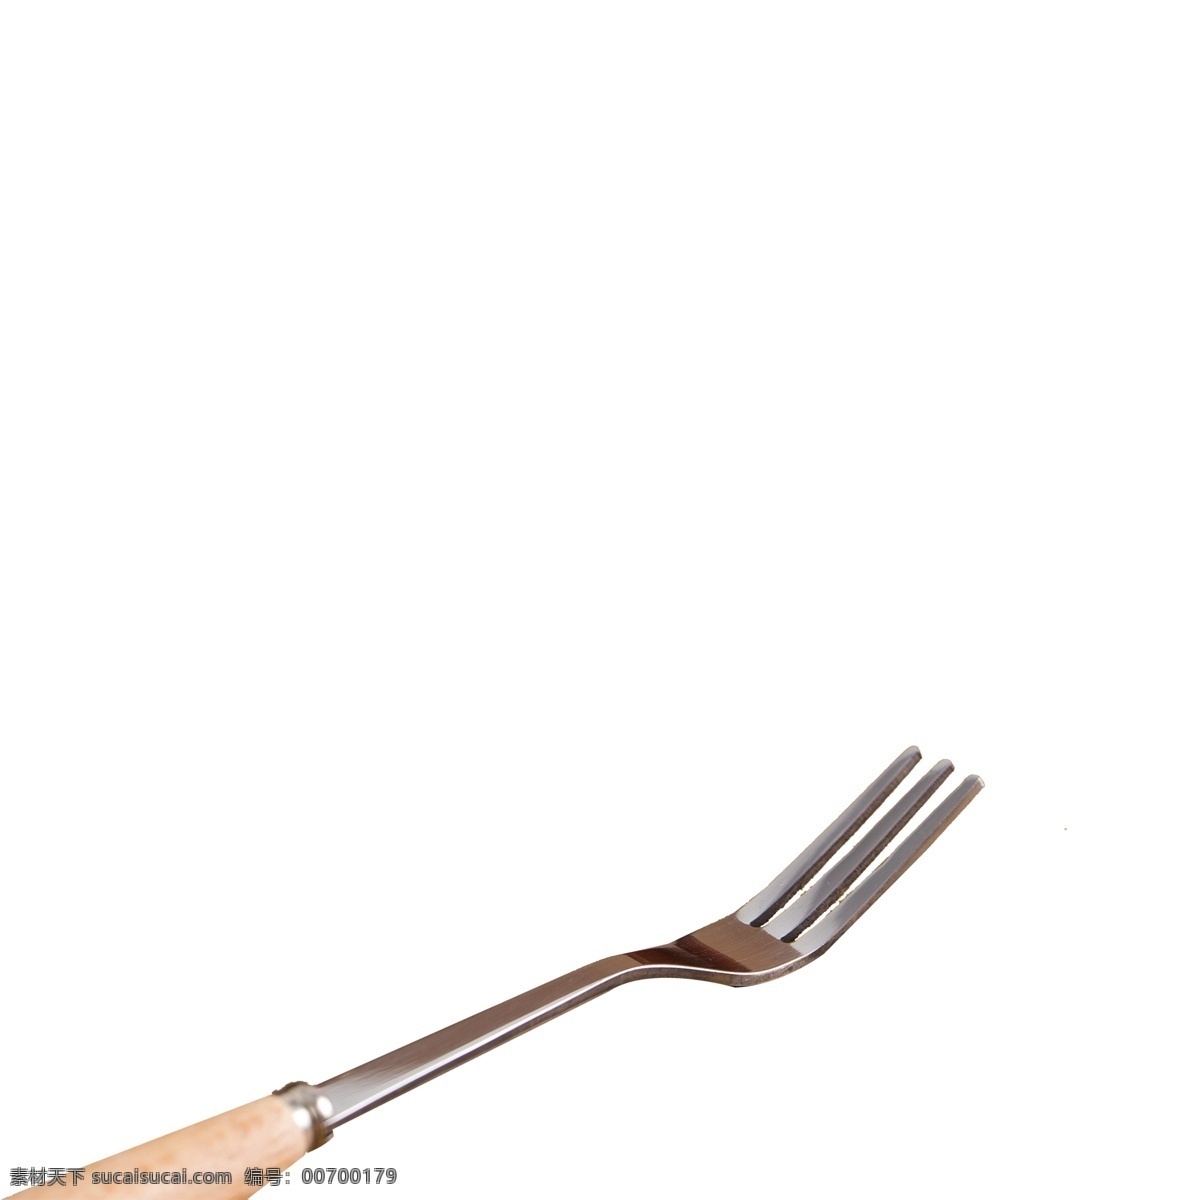 银白色 叉子 免 抠 图 西餐工具 刀叉 生活用品 吃饭的工具 时尚刀叉 工具 银白色的叉子 免抠图